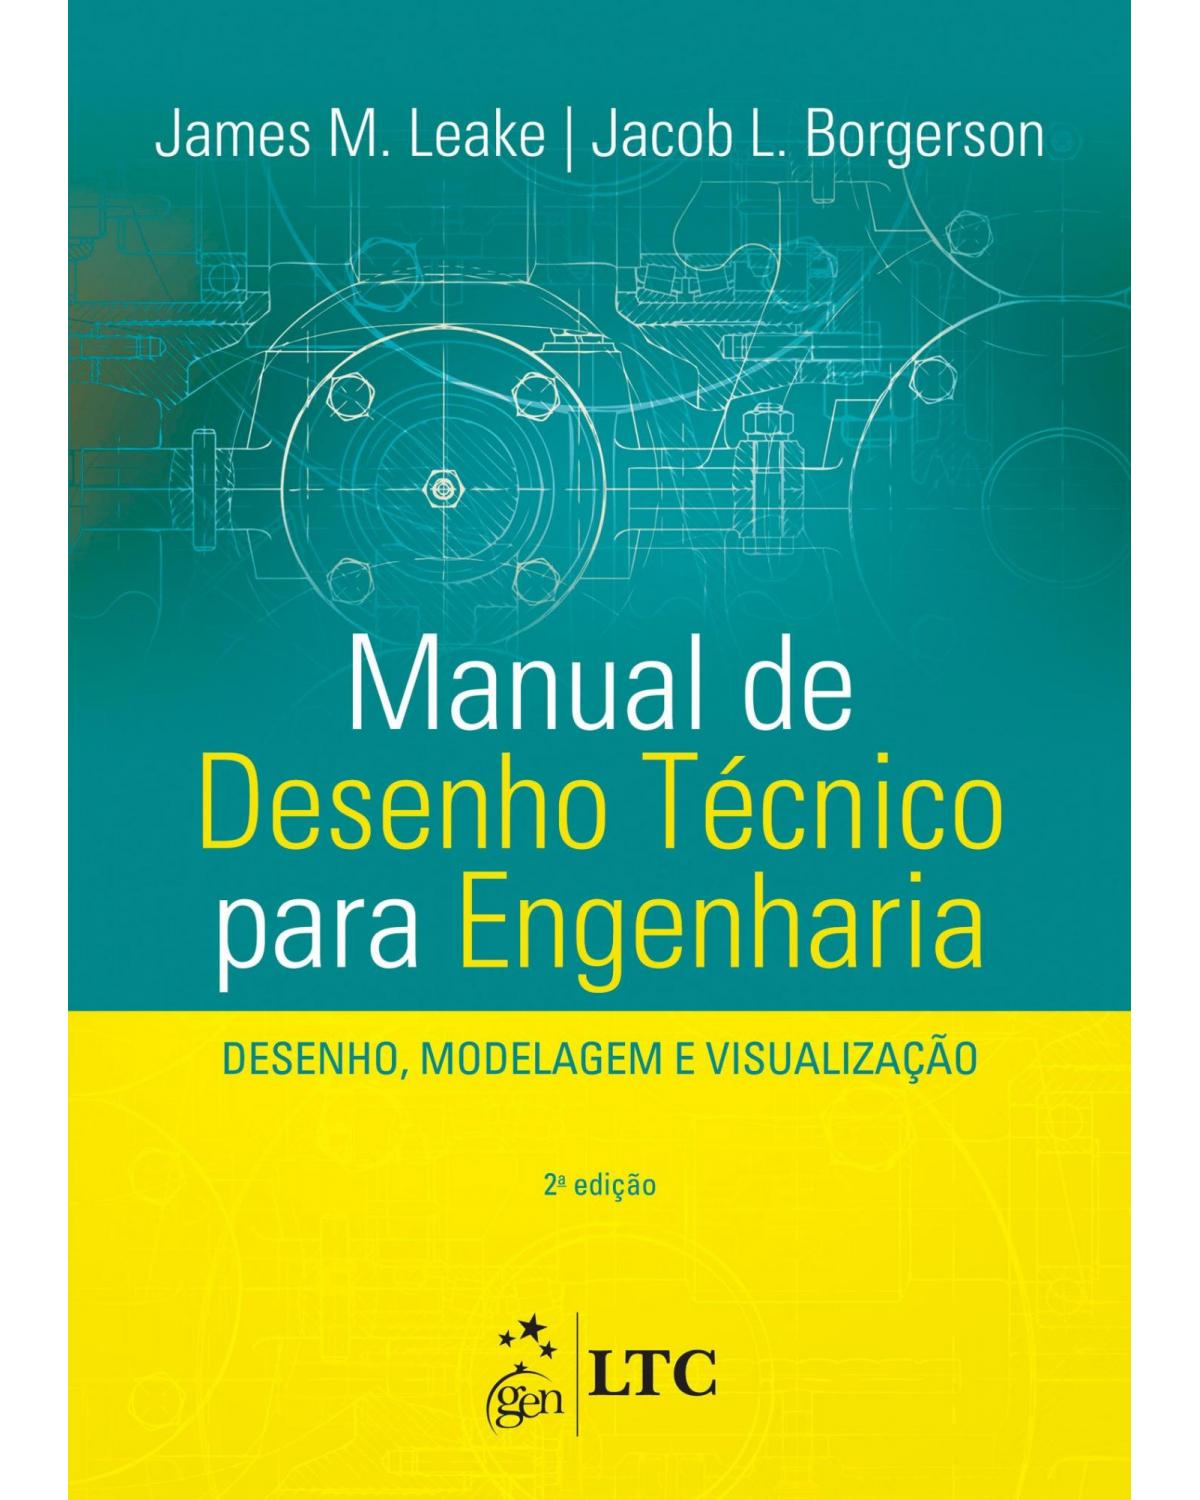 Manual de desenho técnico para engenharia - Desenho, modelagem e visualização - 2ª Edição | 2015